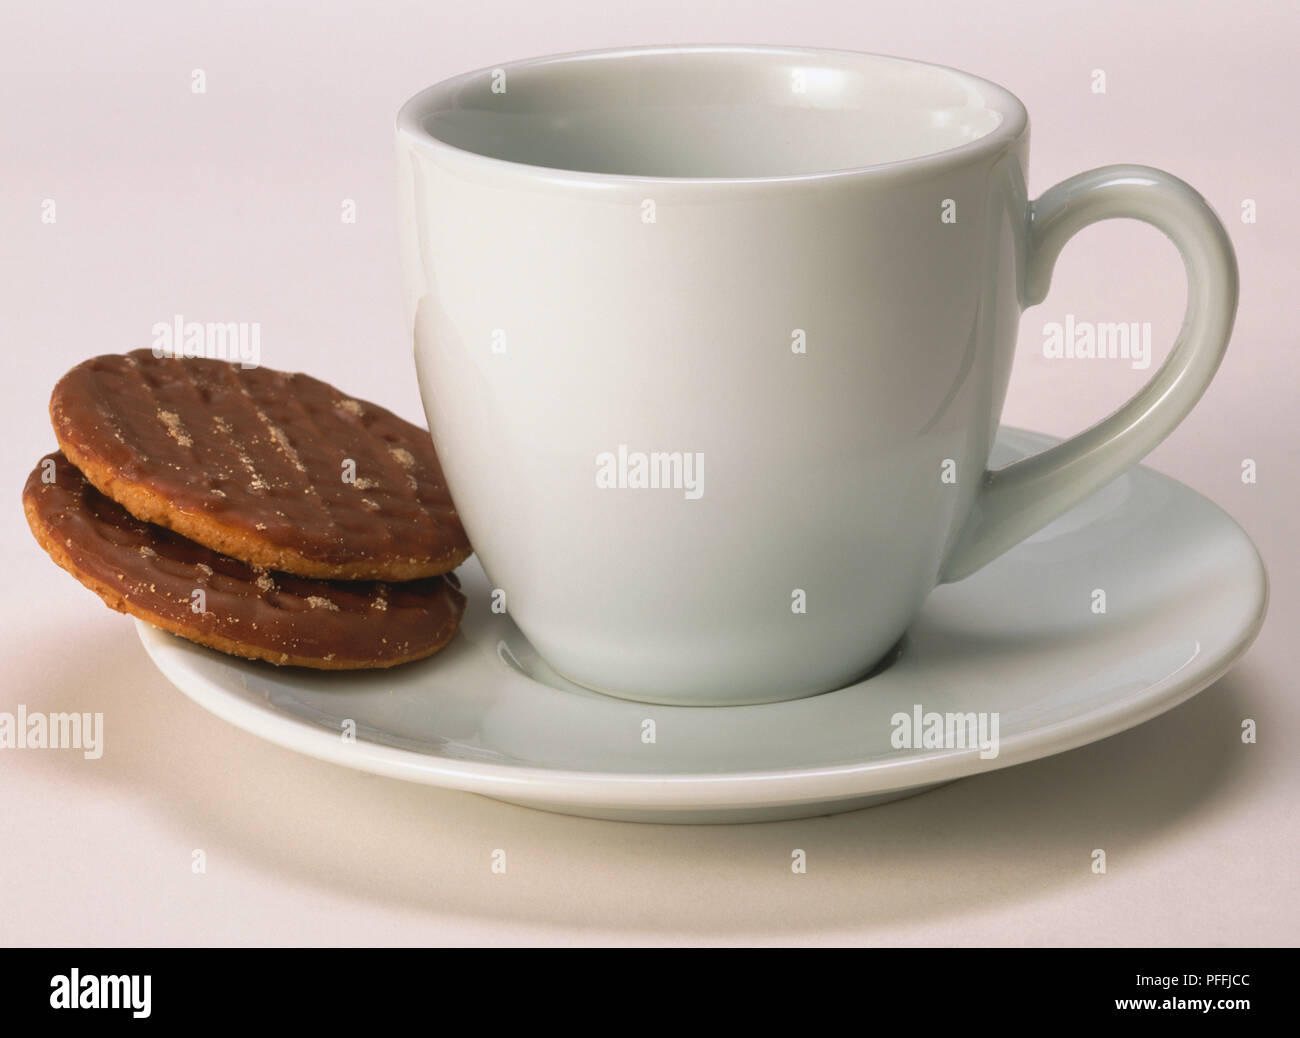 Tazza bianca con piattino con due biscotti al cioccolato in appoggio sul piattino, vista frontale. Foto Stock